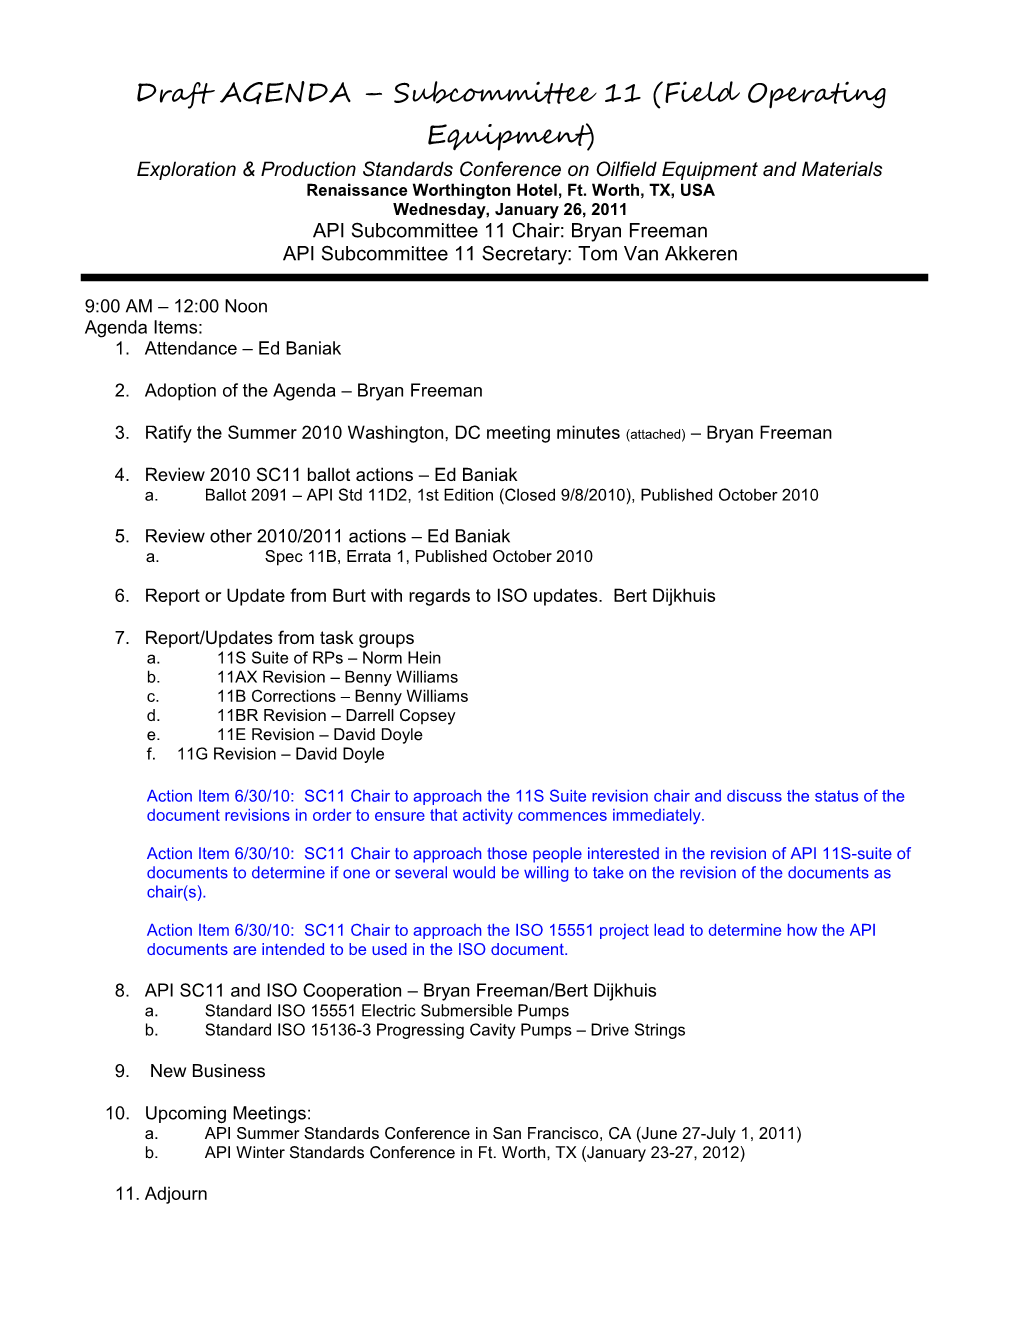 Draftagenda Subcommittee 11 (Field Operating Equipment)